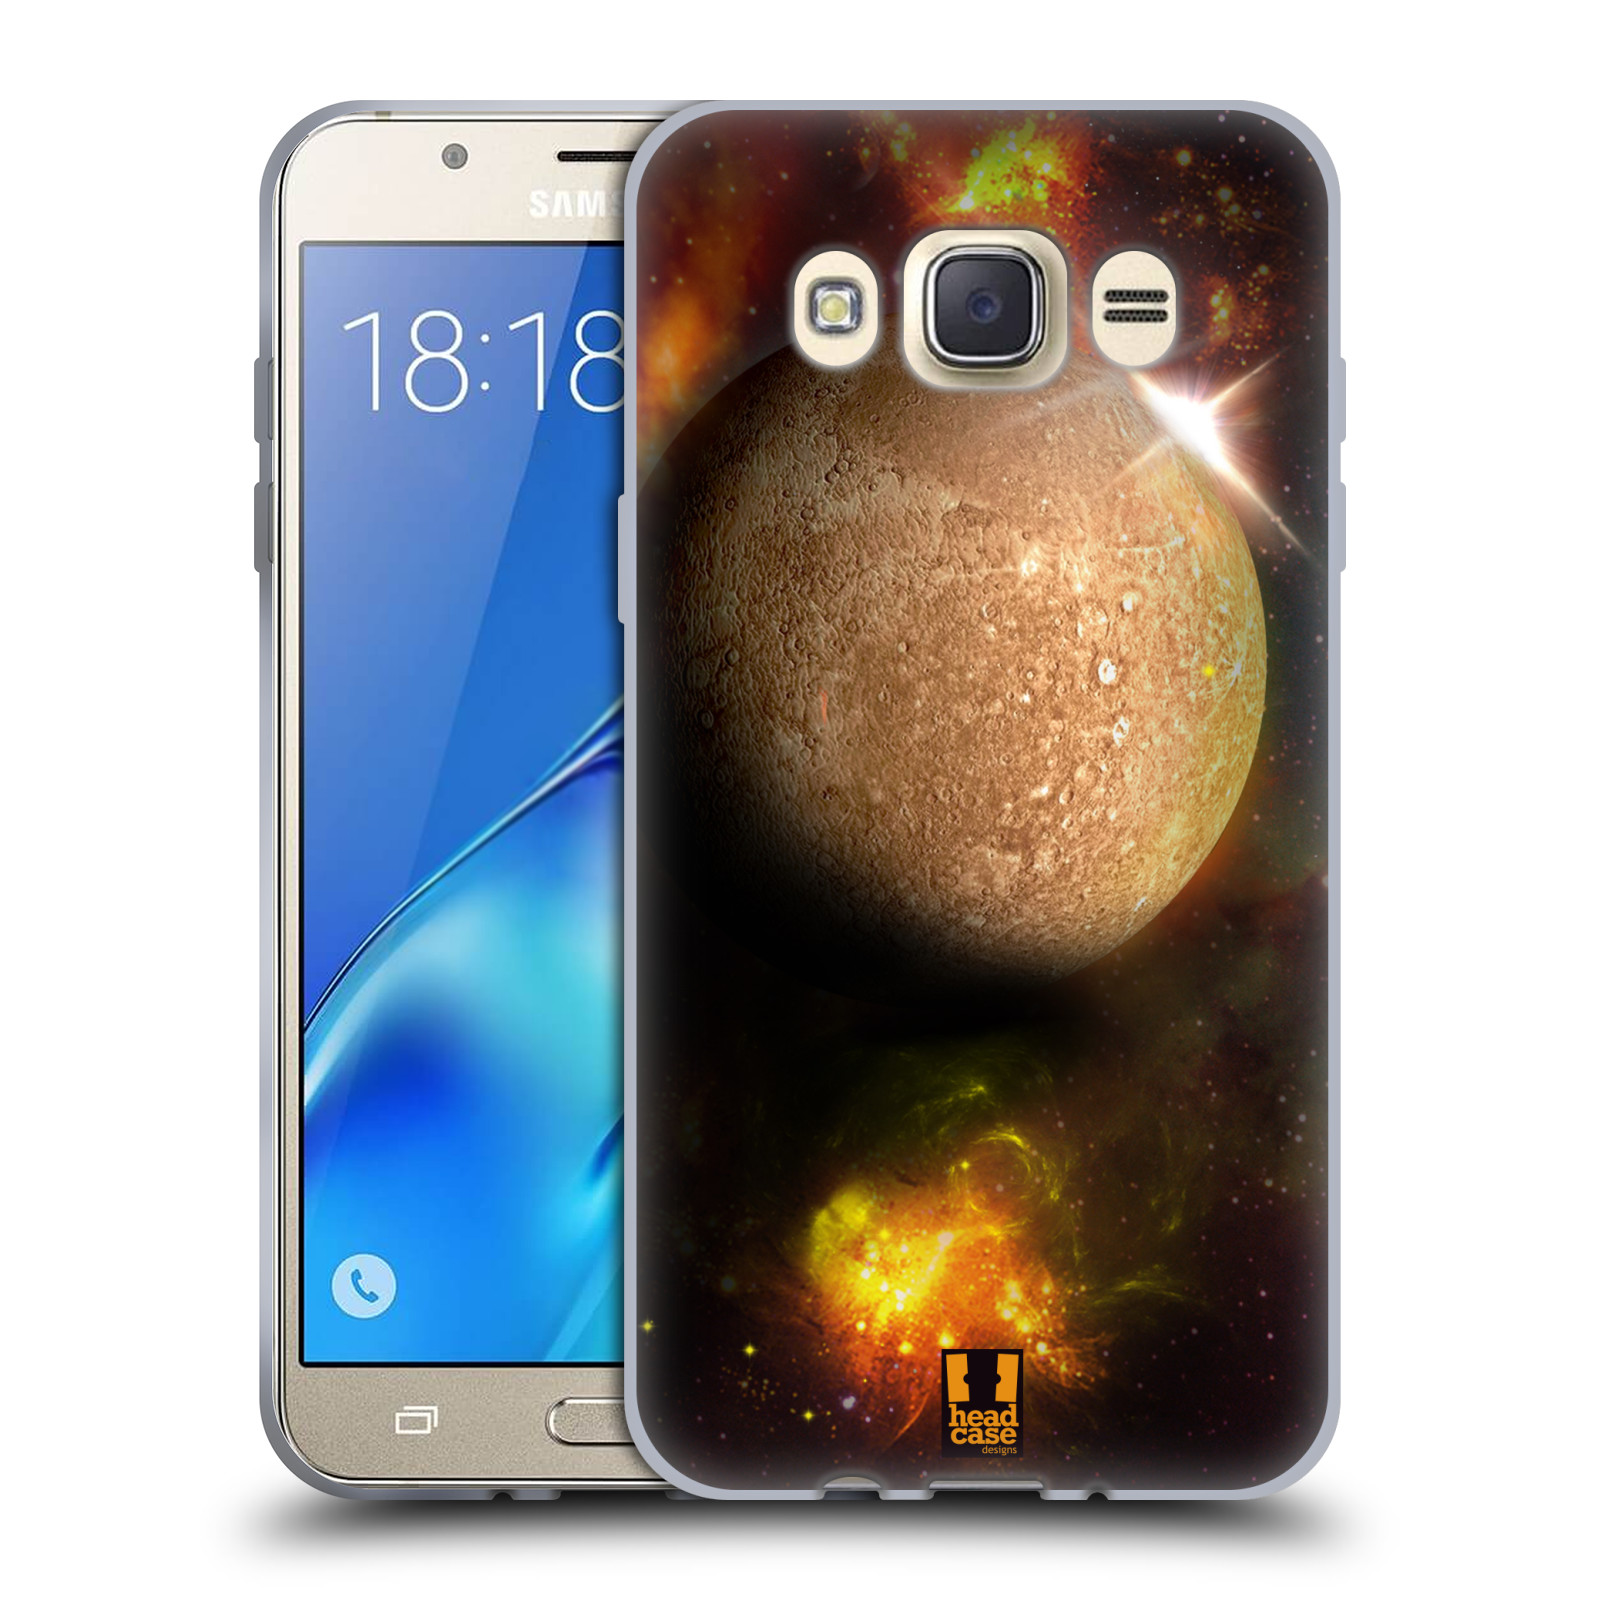 HEAD CASE silikonový obal, kryt na mobil Samsung Galaxy J7 2016 (J710, J710F) vzor Vesmírná krása MERKUR PLANETA